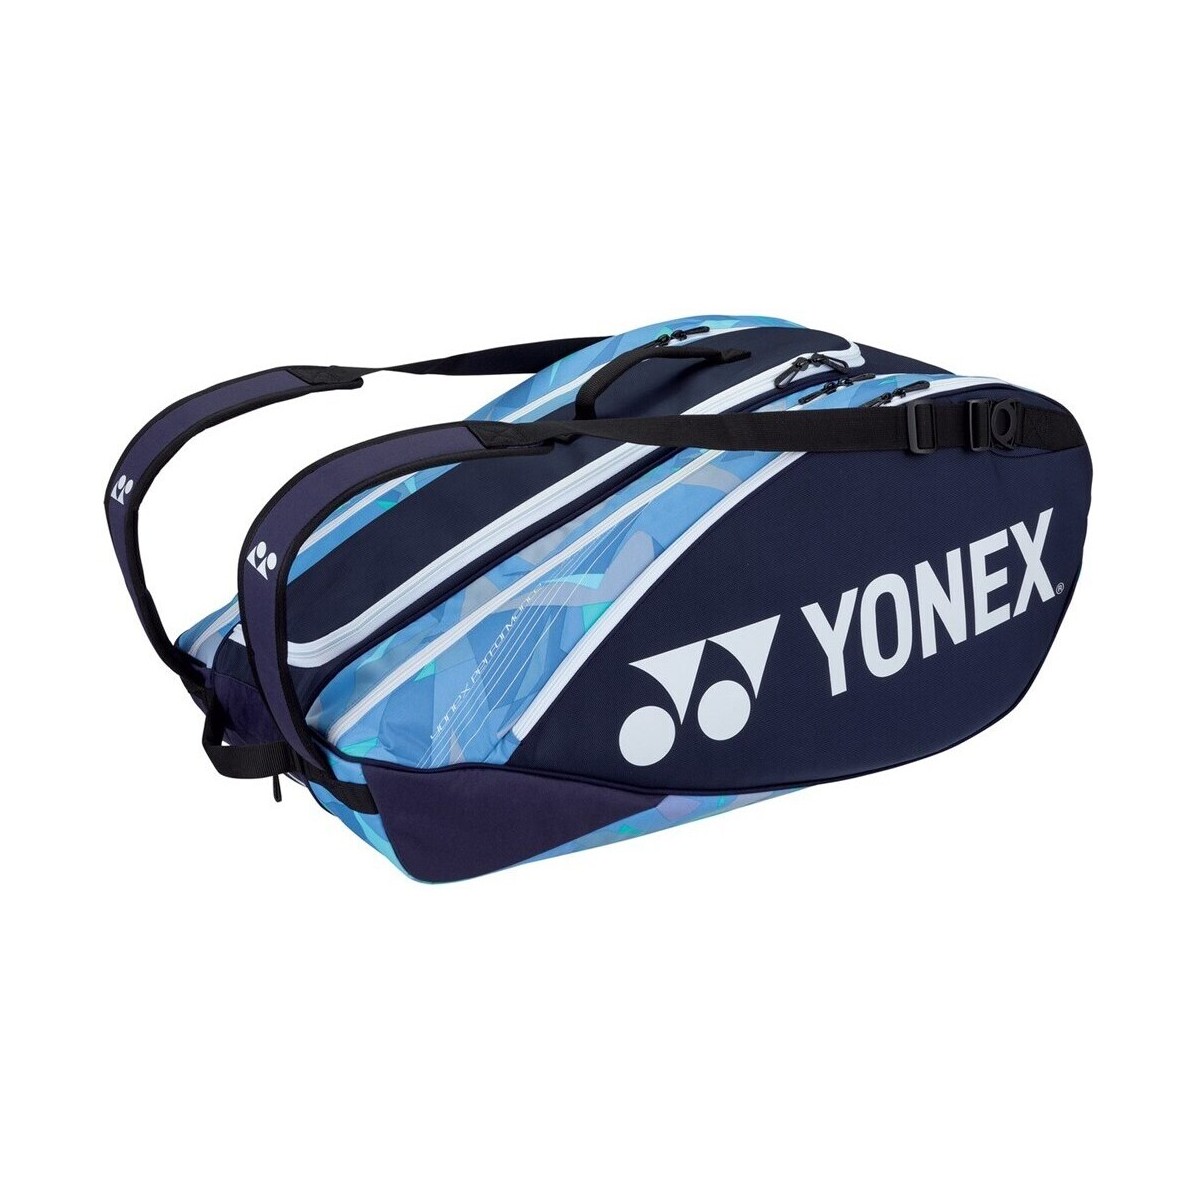 Taschen Taschen Yonex Thermobag 92229 Pro Racket Bag 9R Dunkelblau, Blau